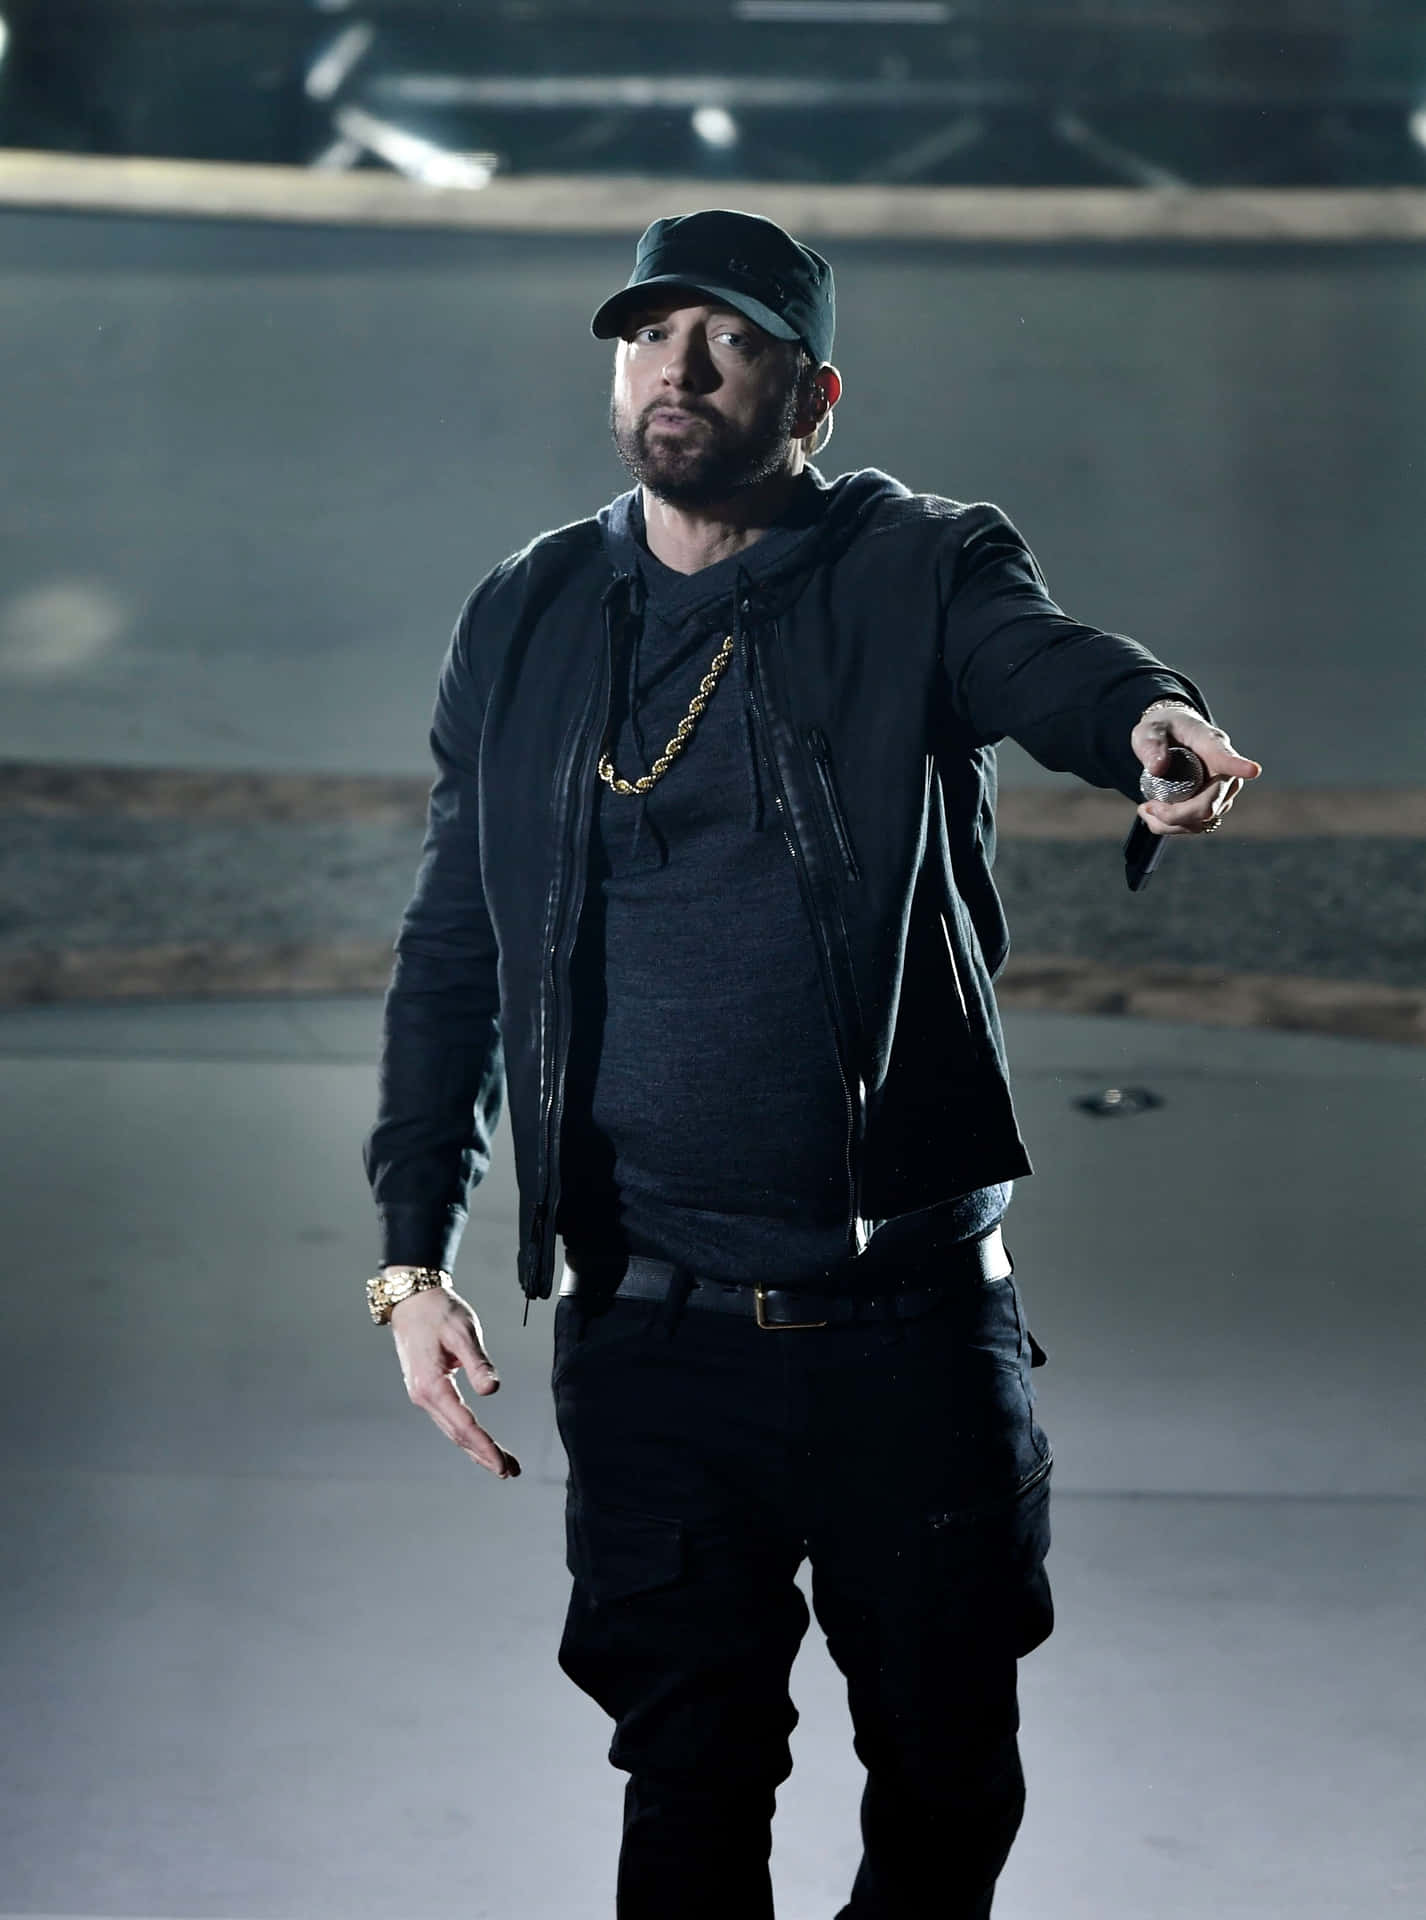 Eminembild: 3370 X 4537 Pixel